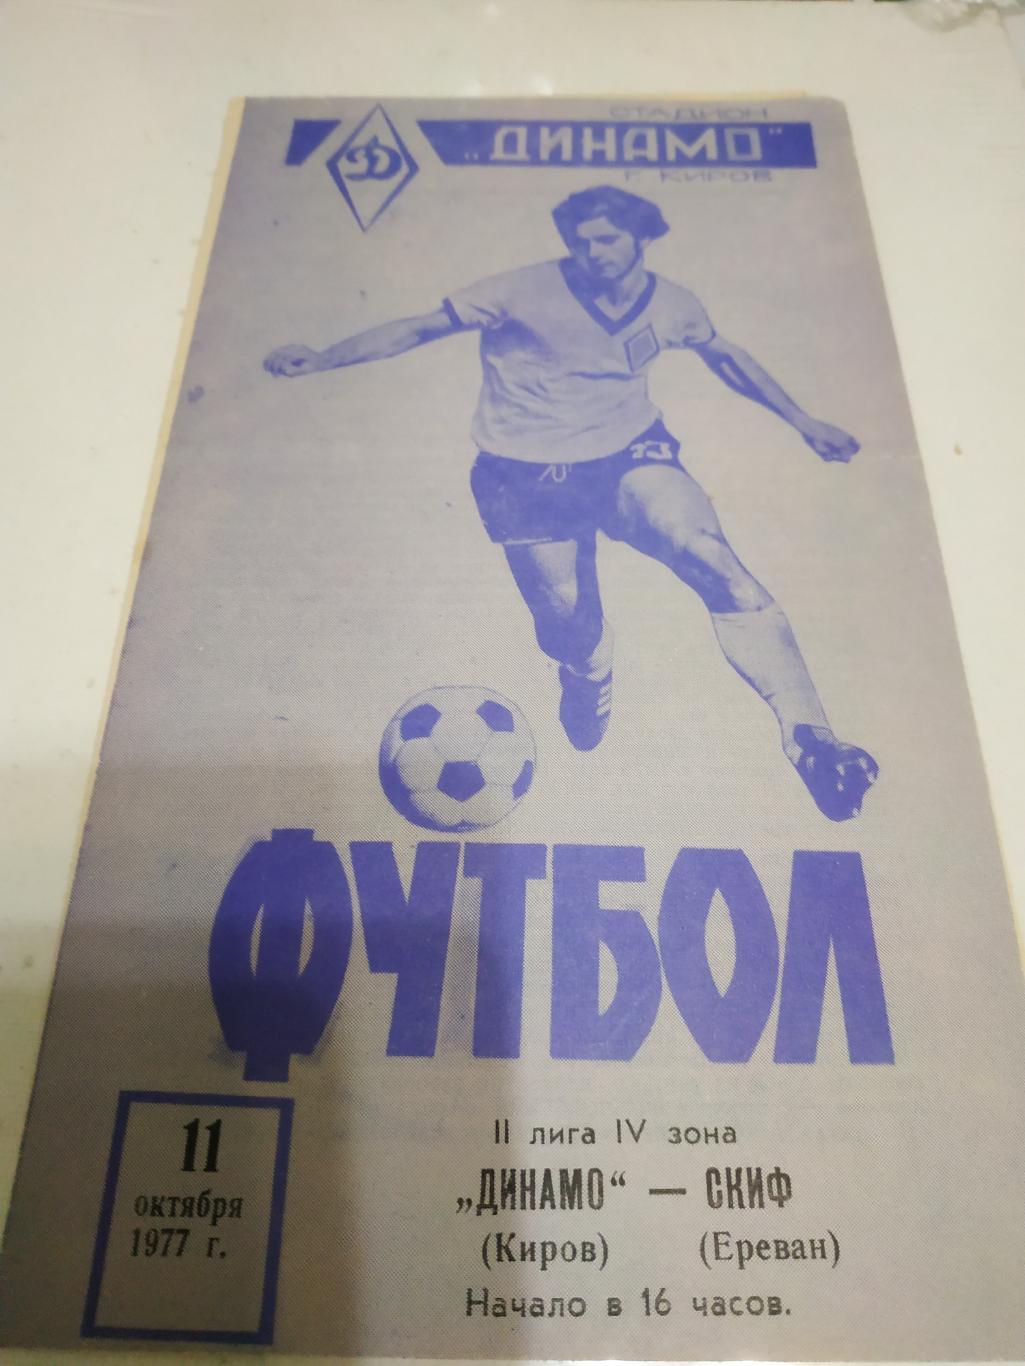 Динамо (Киров) - Скиф (Ереван)1977